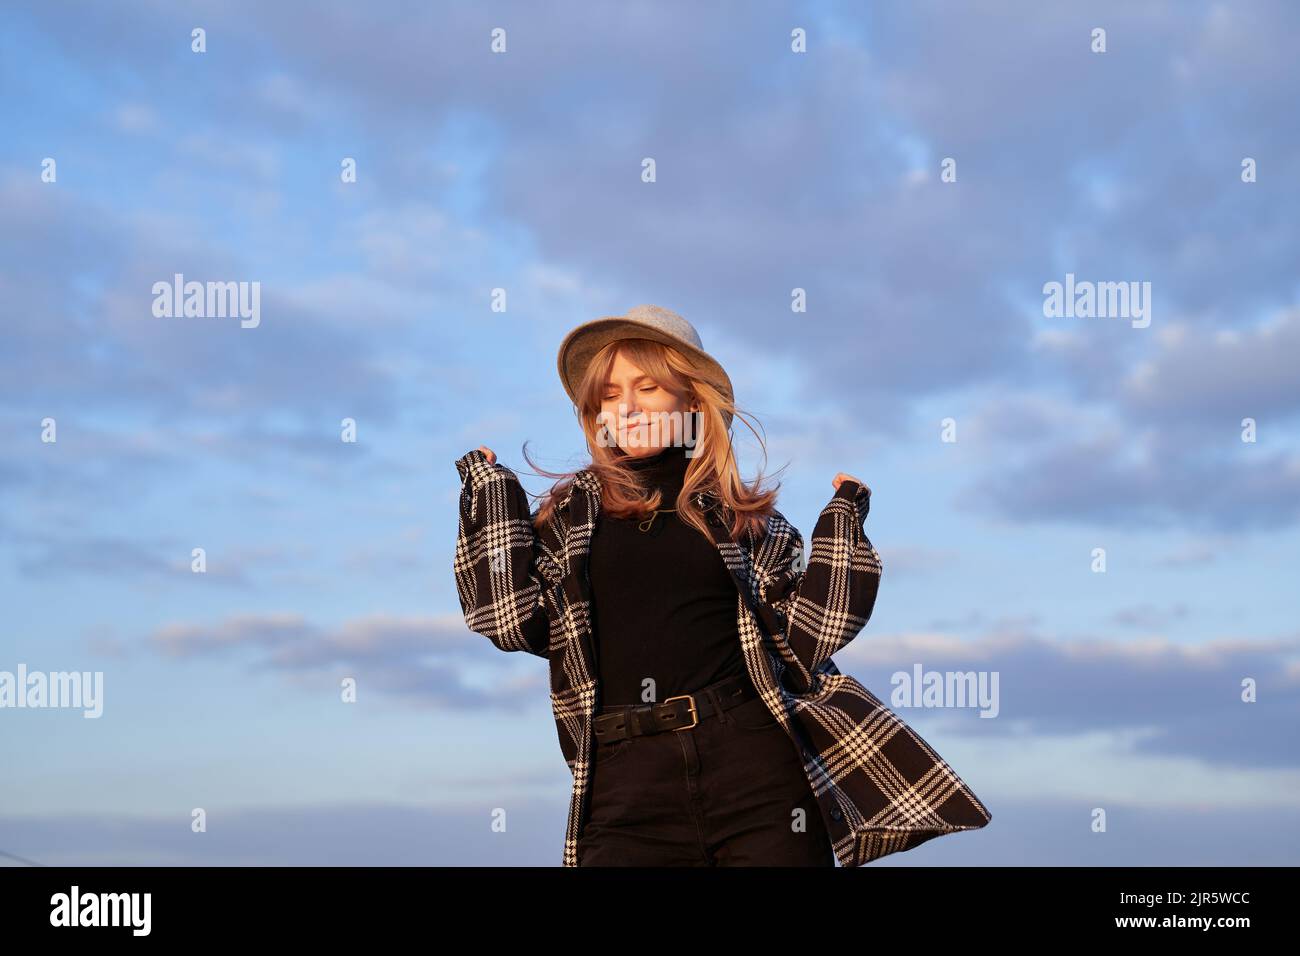 Concept gagnant, expressif ou positif. Jeune fille caucasienne en chapeau, jeans noirs et chemise dansant sensation joyeuse ou insouciante d'émotion devant le ciel bleu nuageux. Image de haute qualité Banque D'Images